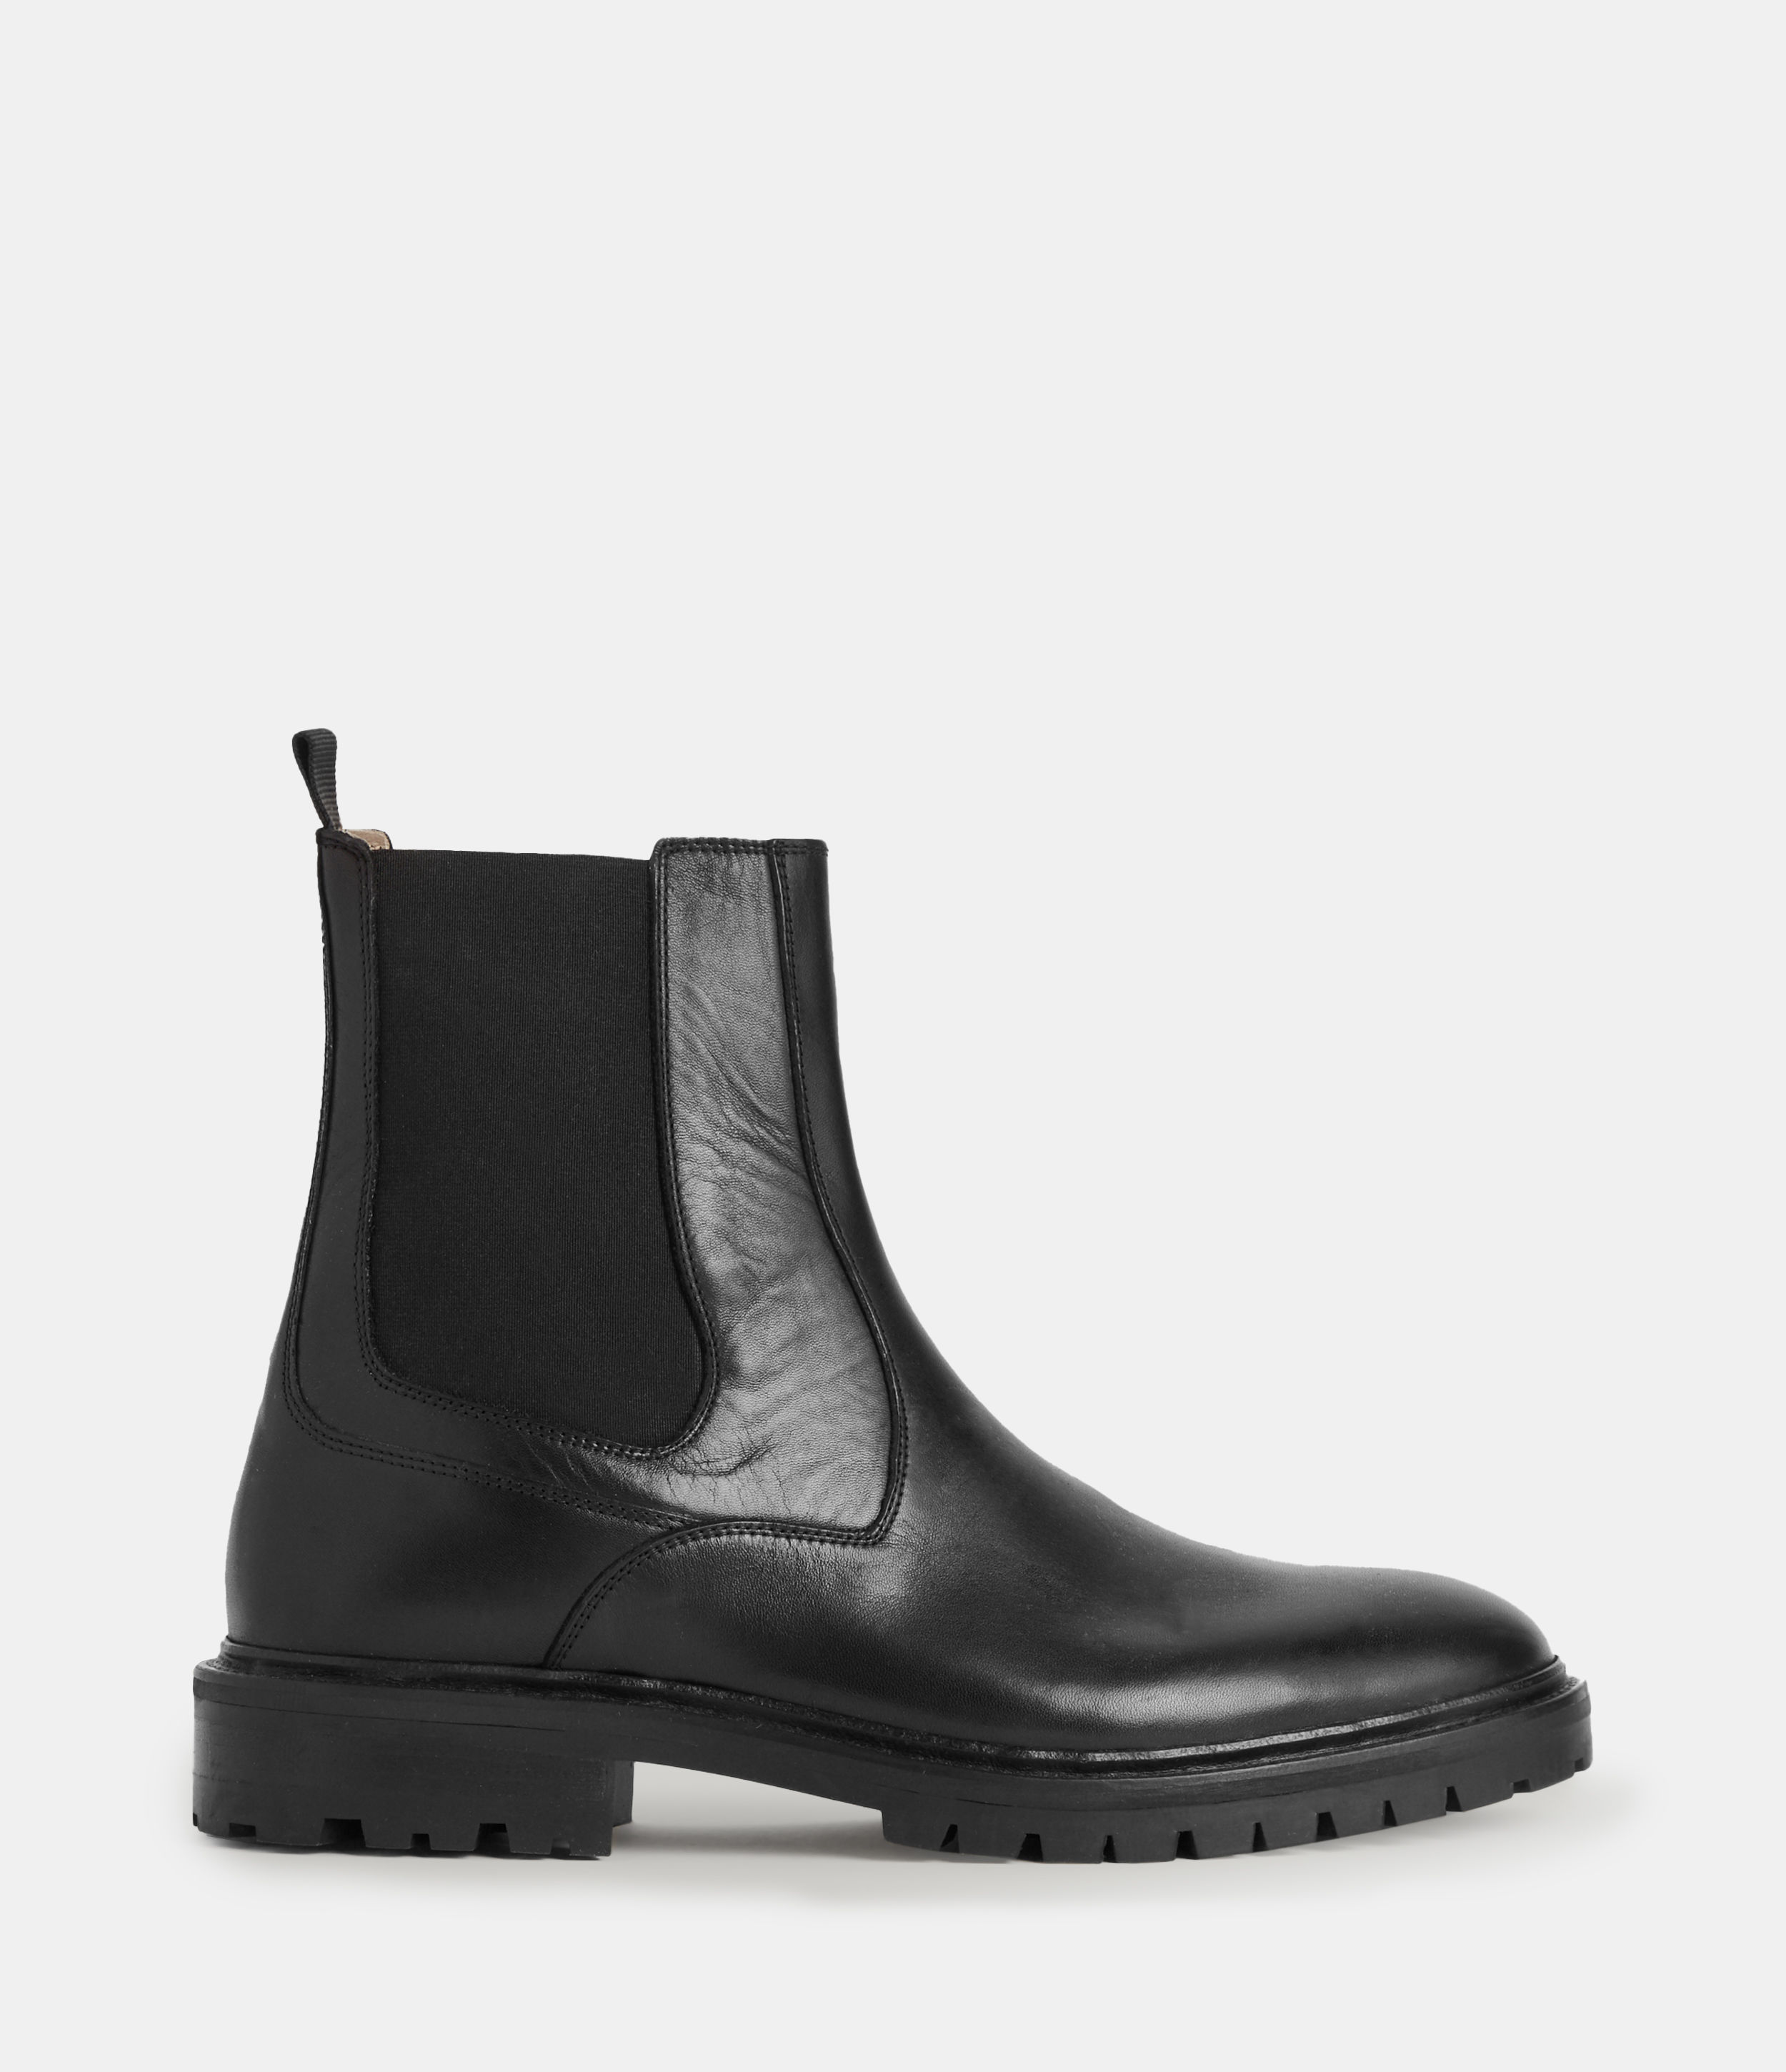 AllSaints Men's Melos Leather Chelsea Boots, Black, Size: UK 11/US 12/EU 45